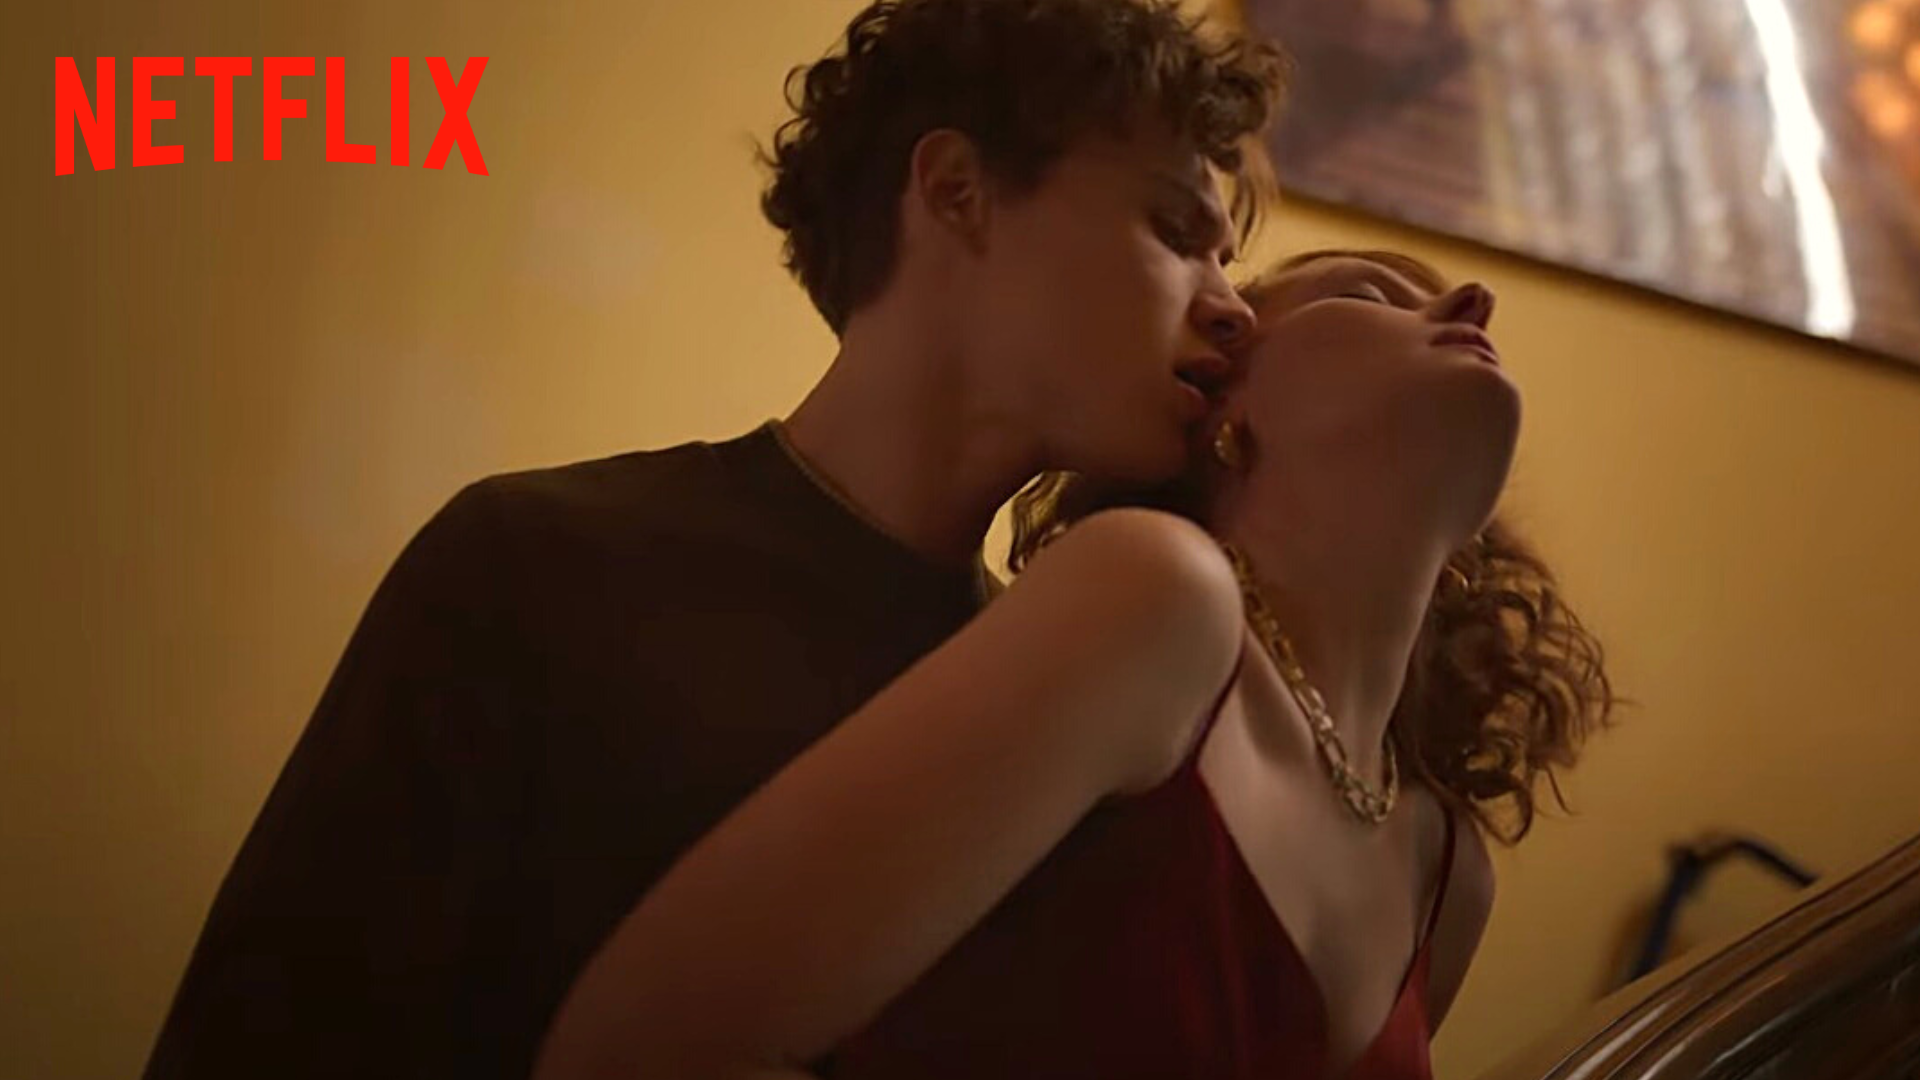 "40 ou 50 scènes de sexe repoussant les limites", cette série Netflix va faire du bruit